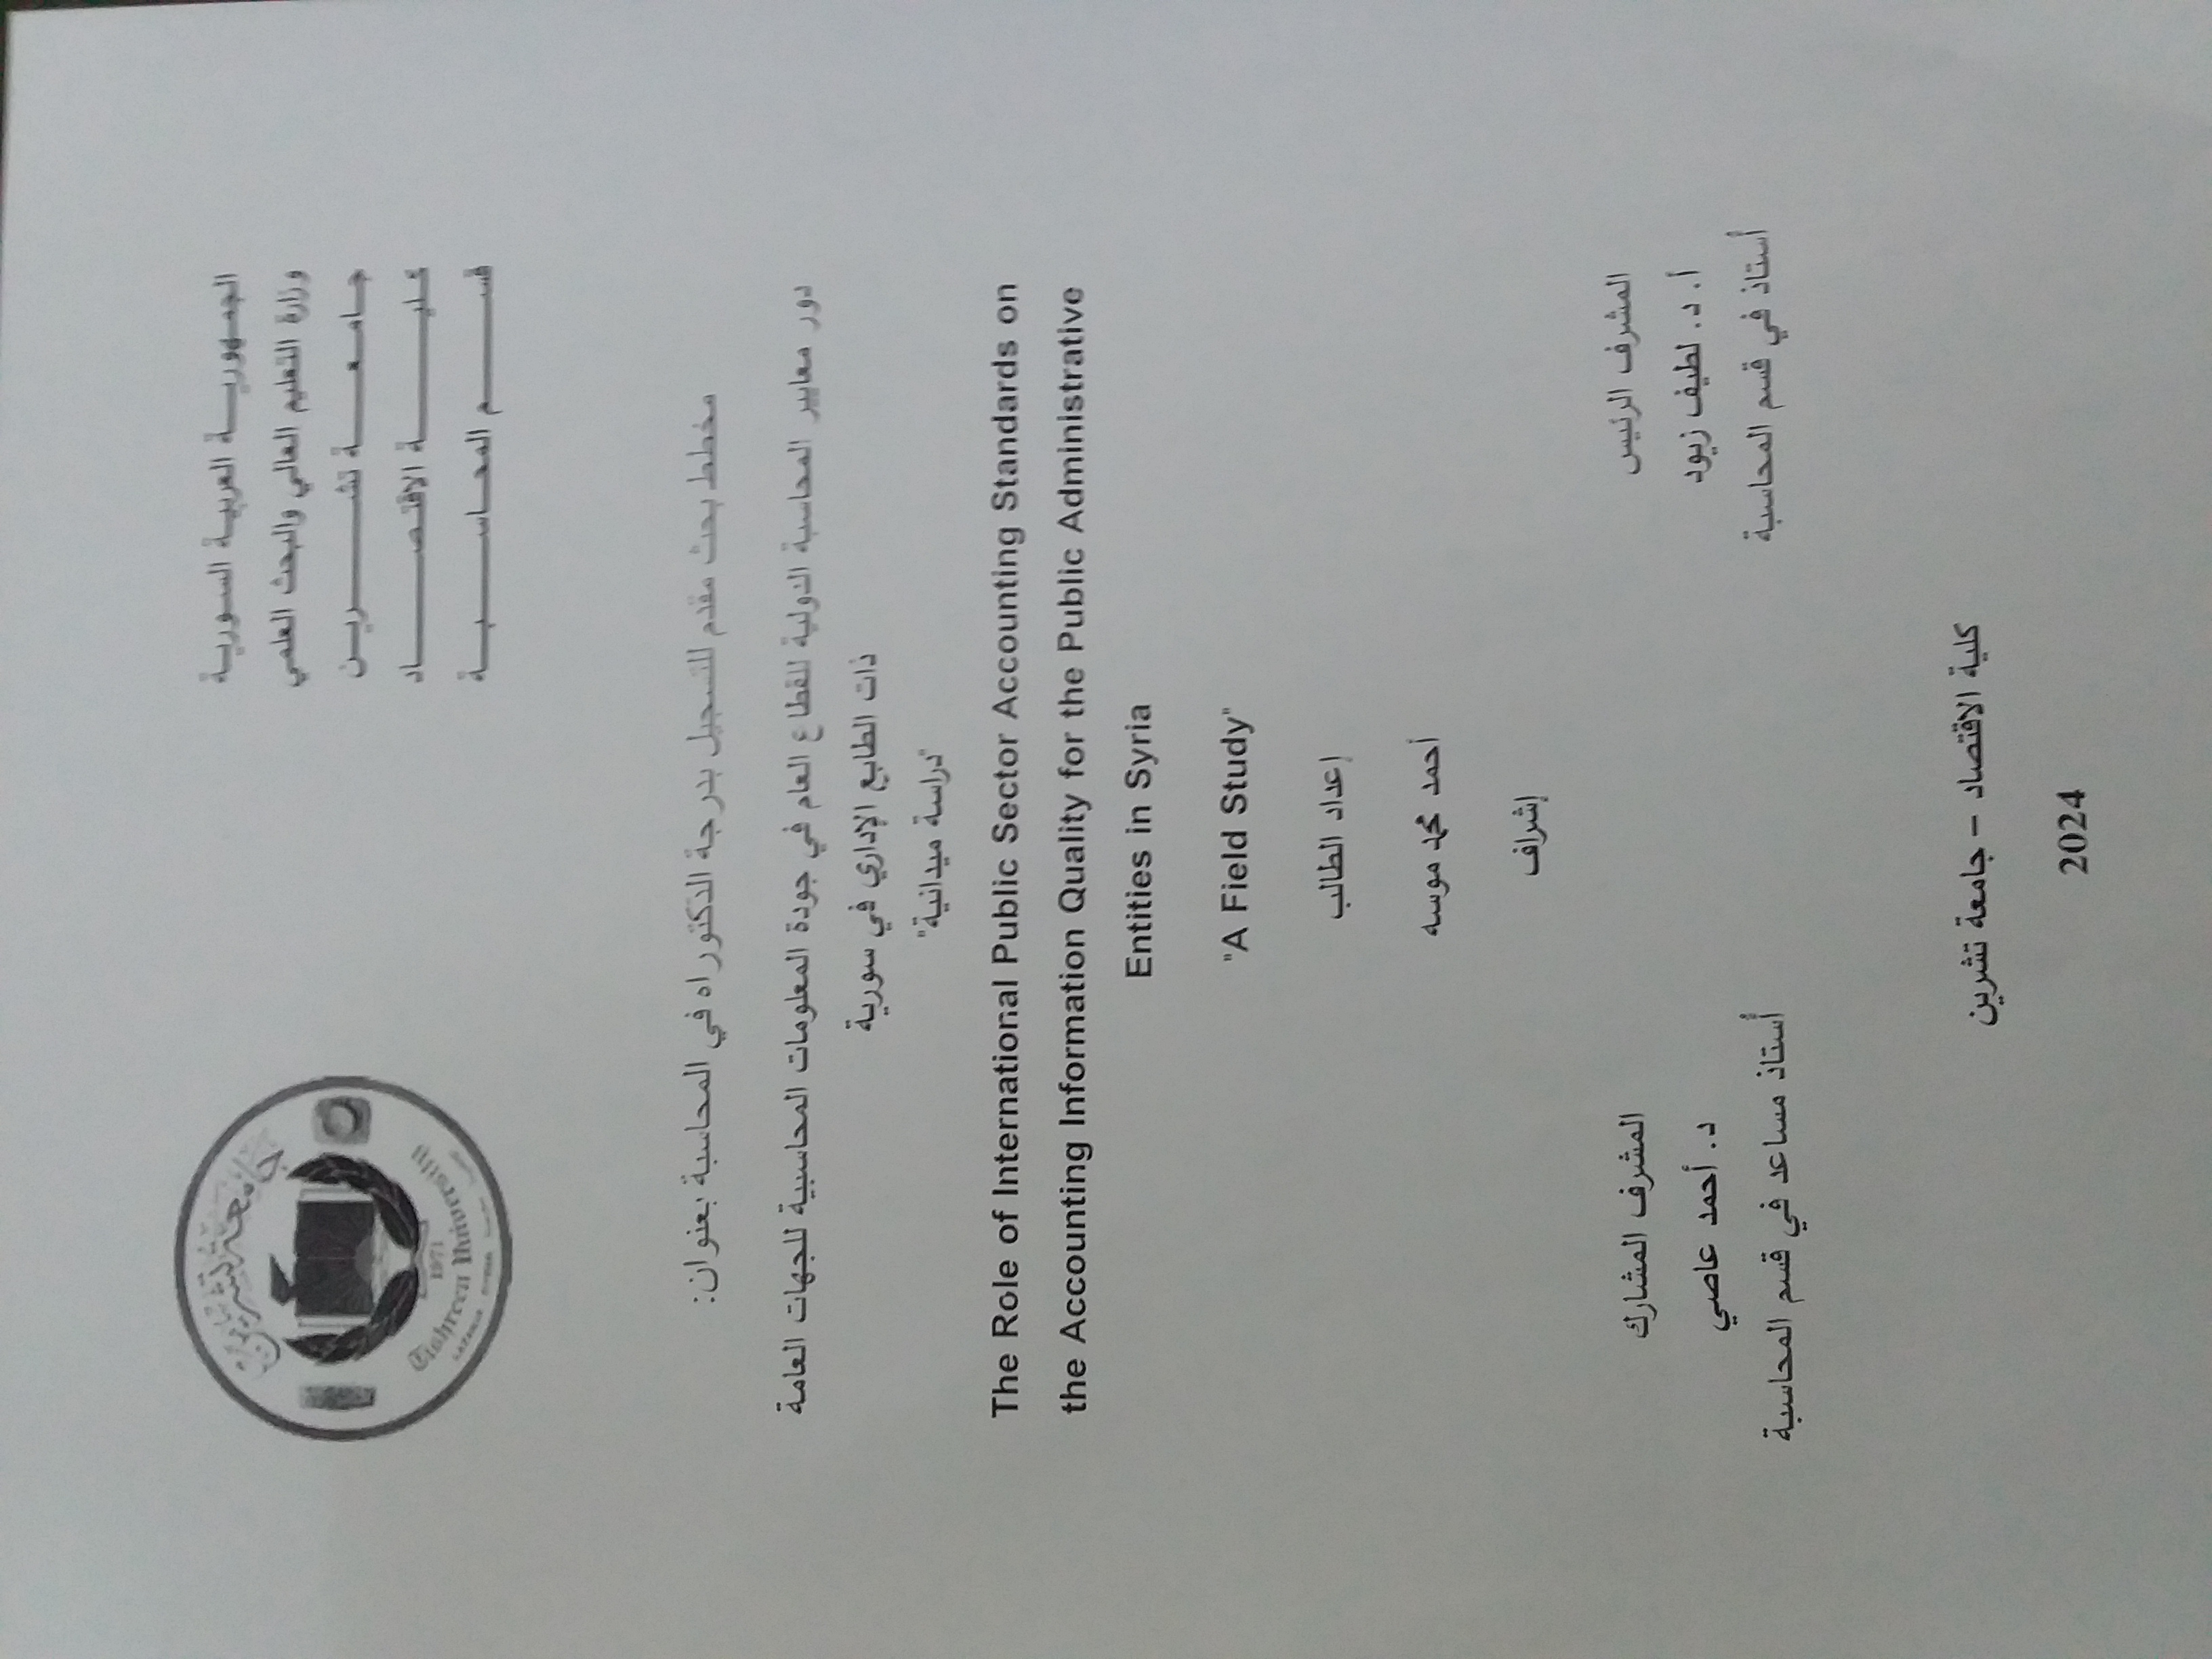 تسجيل درجة دكتوراه للطالب احمد موسه